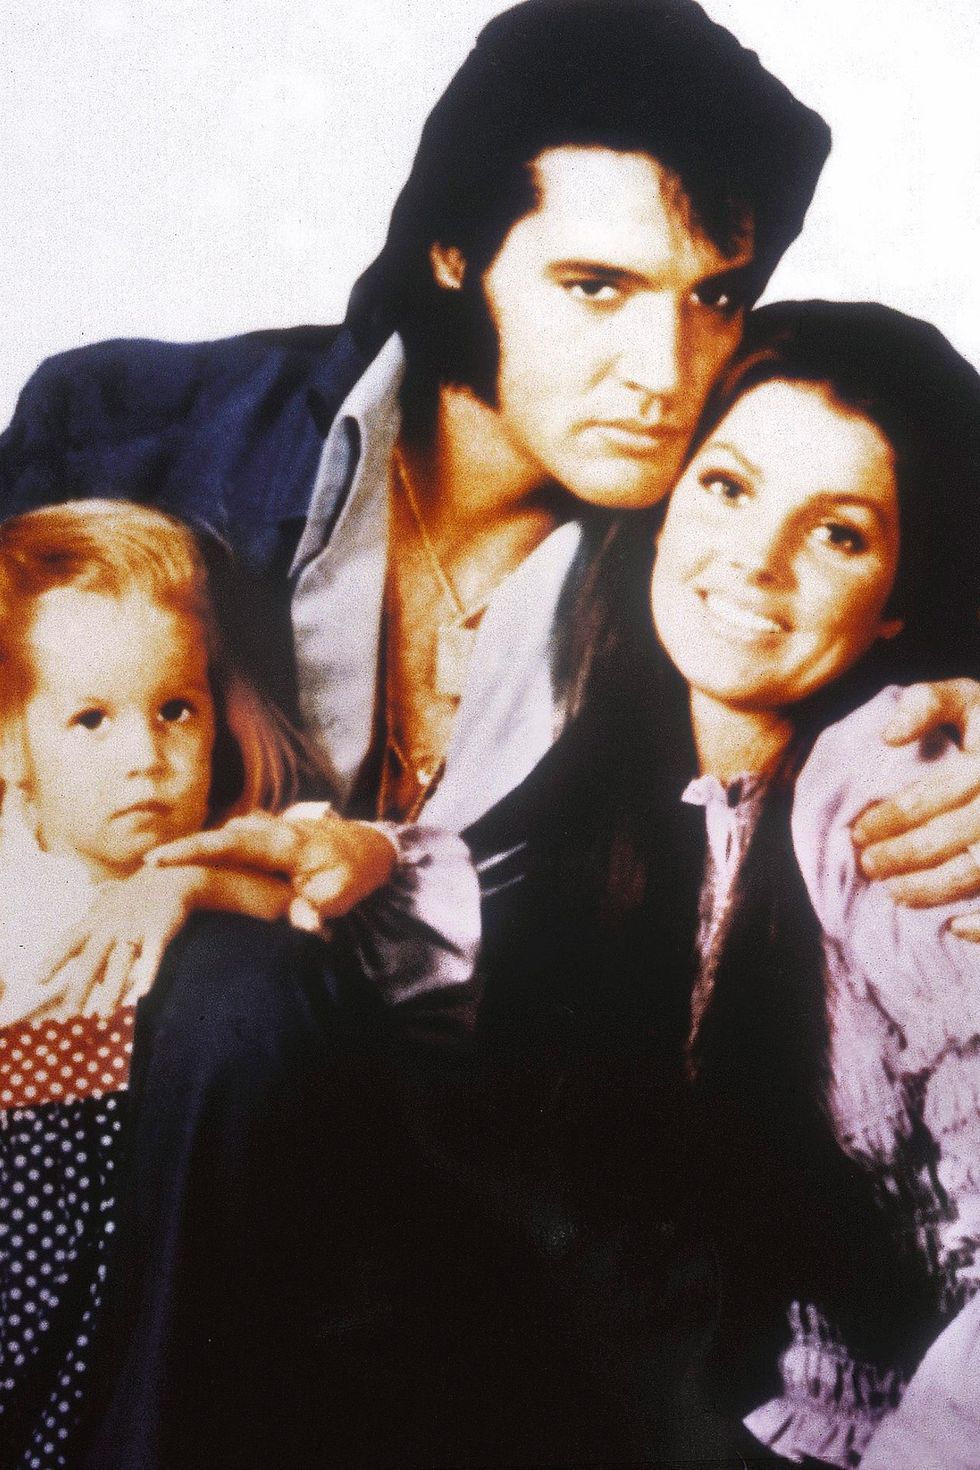 Lisa Marie Presley con sus padres, Elvis Presley y Priscilla Presley